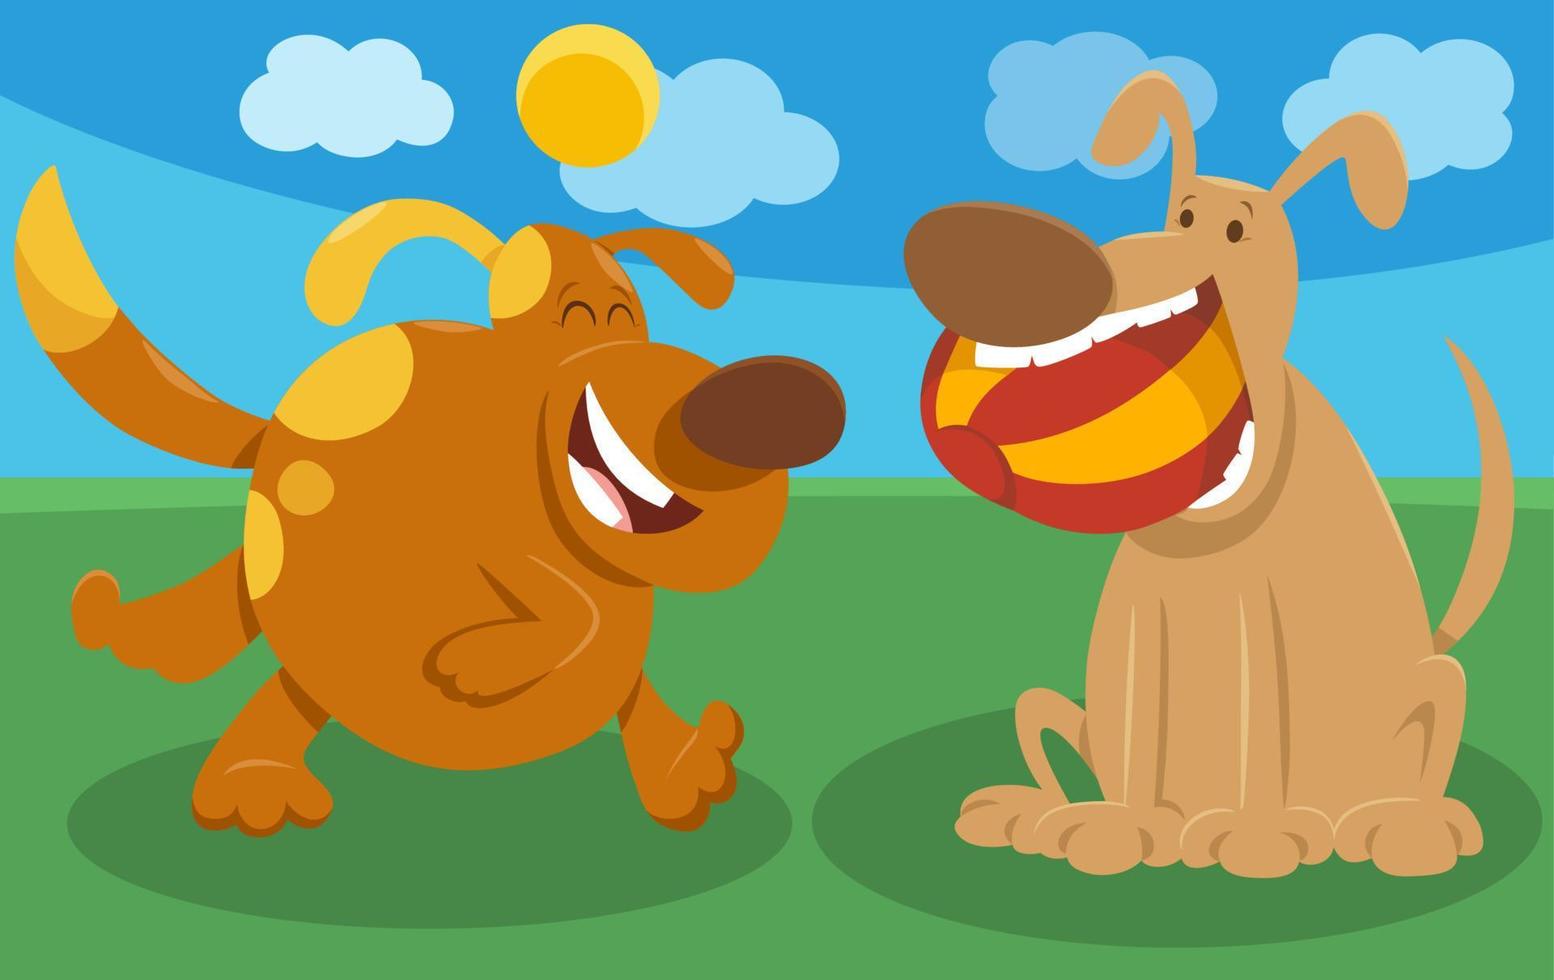 dois cães de desenho animado brincalhão personagens de animais em quadrinhos vetor